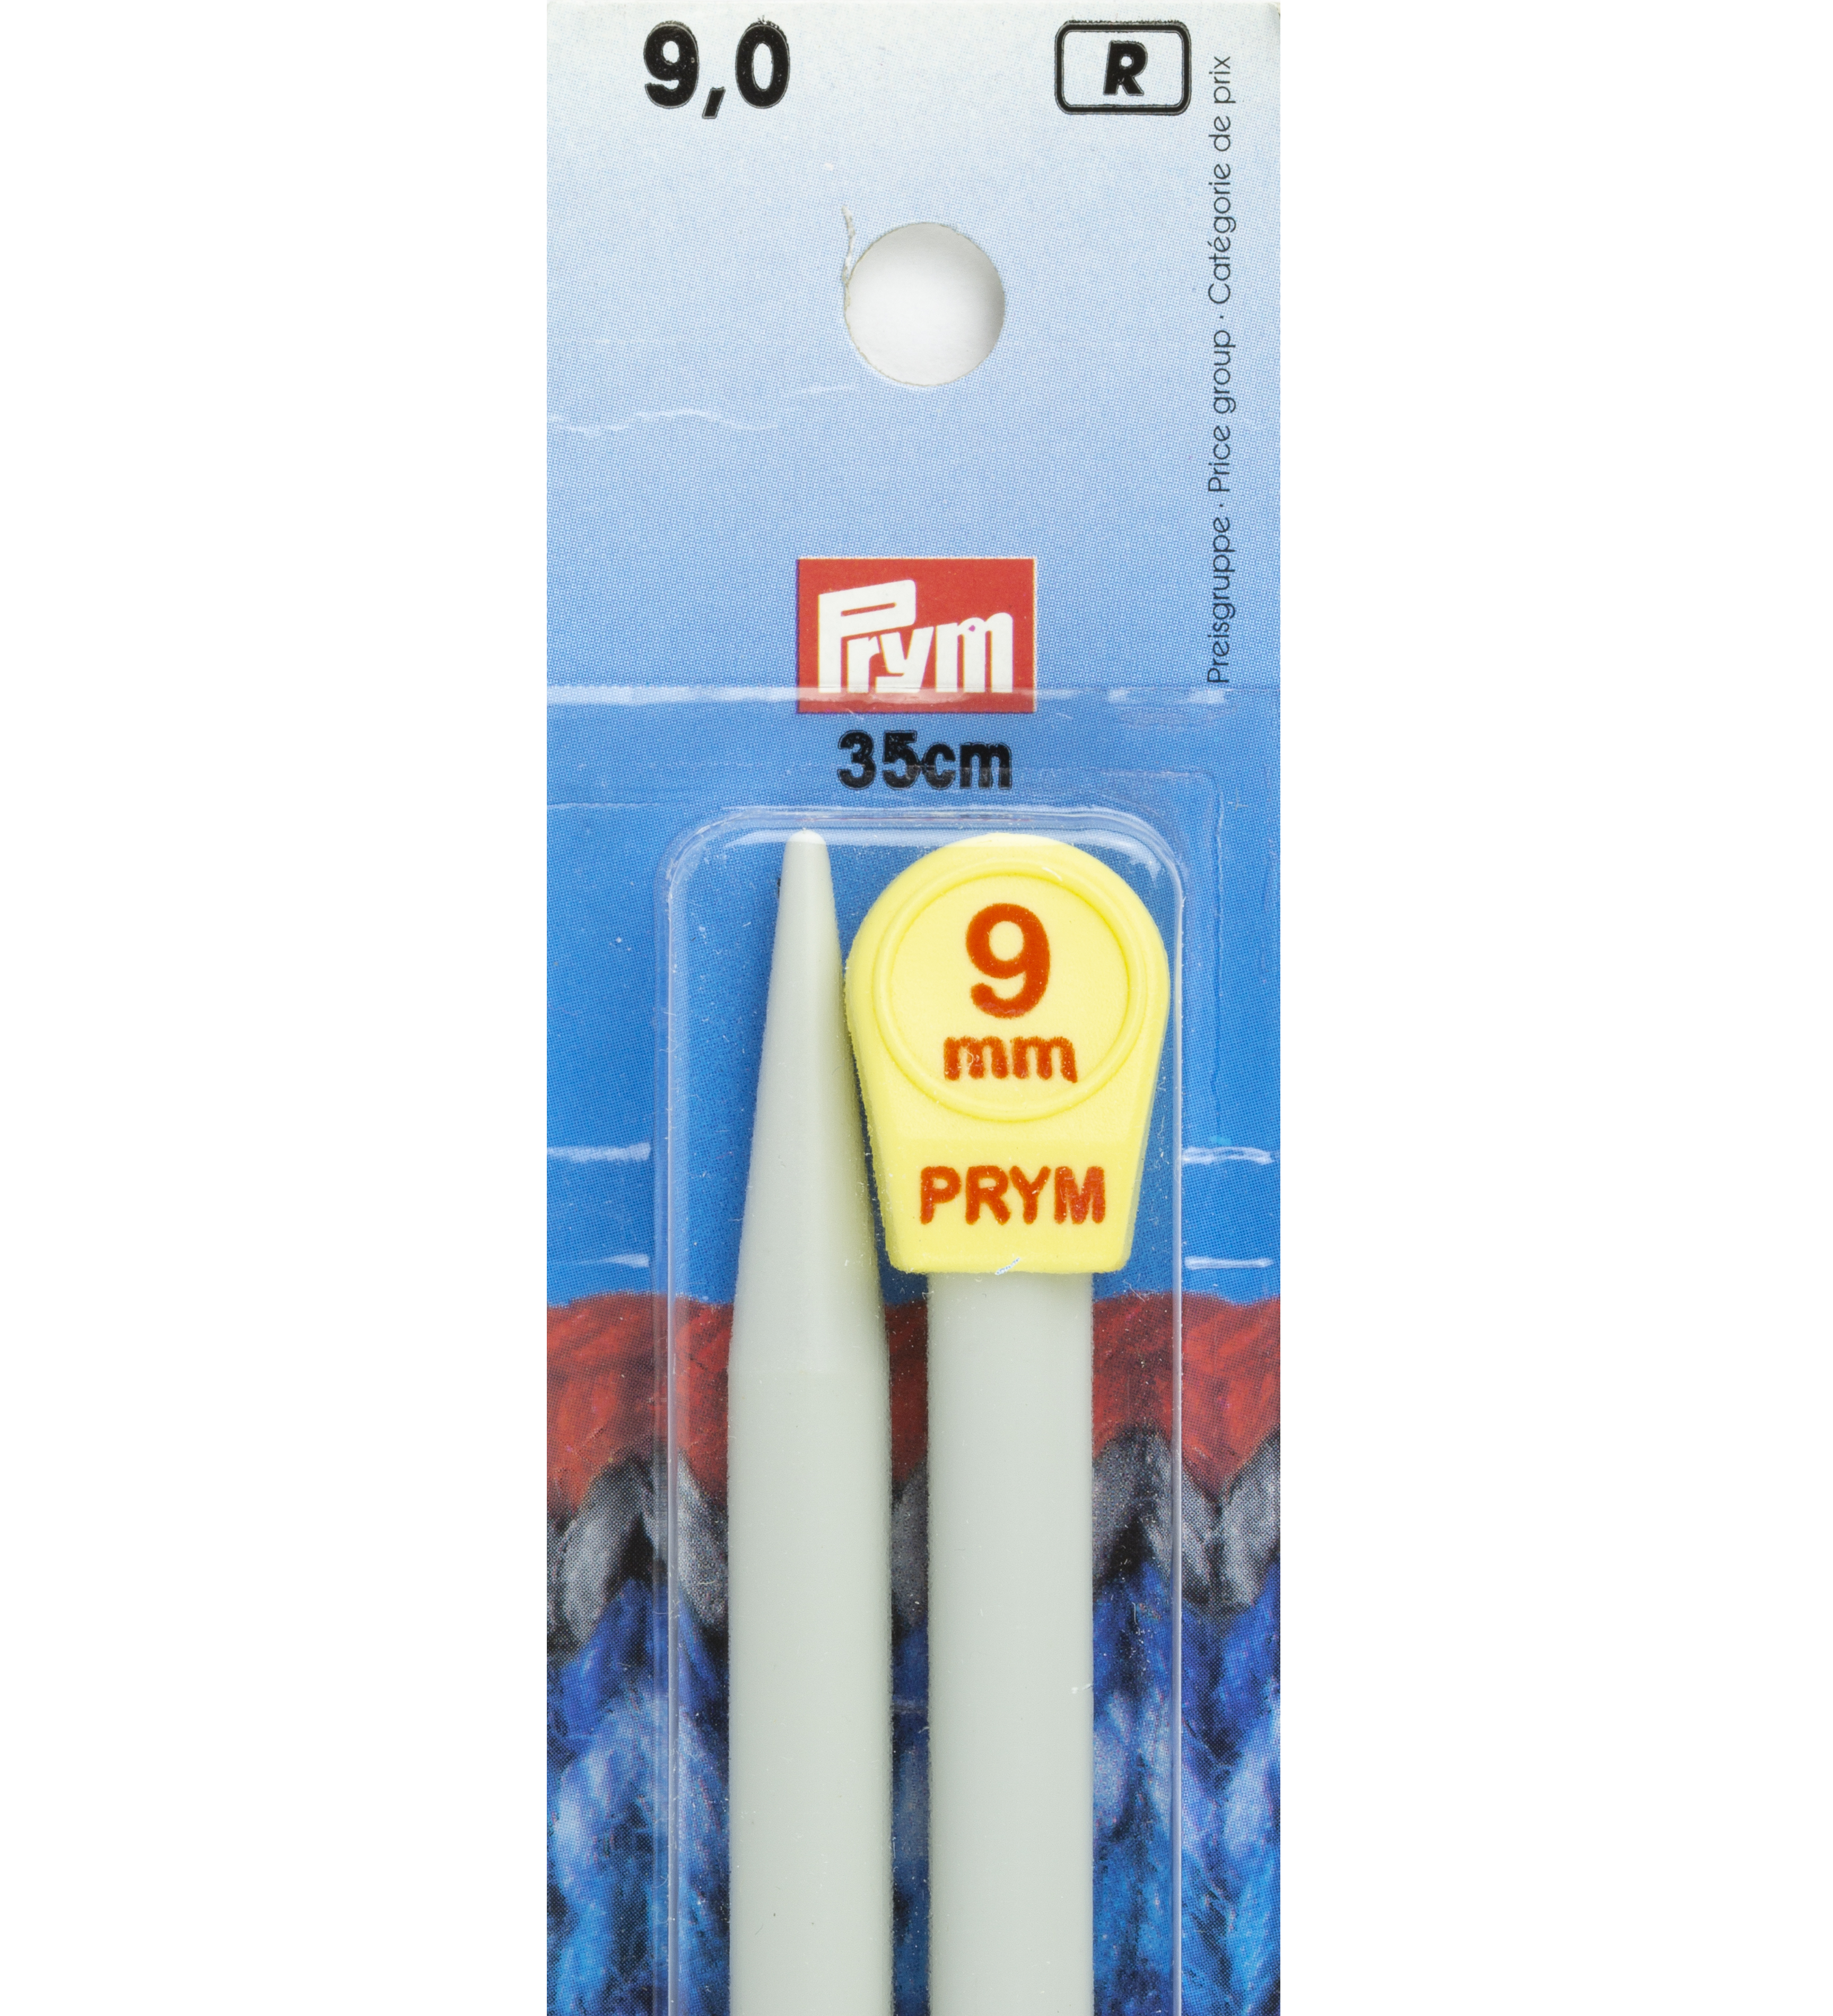 218220 - Prym - Knitting needles KST grey